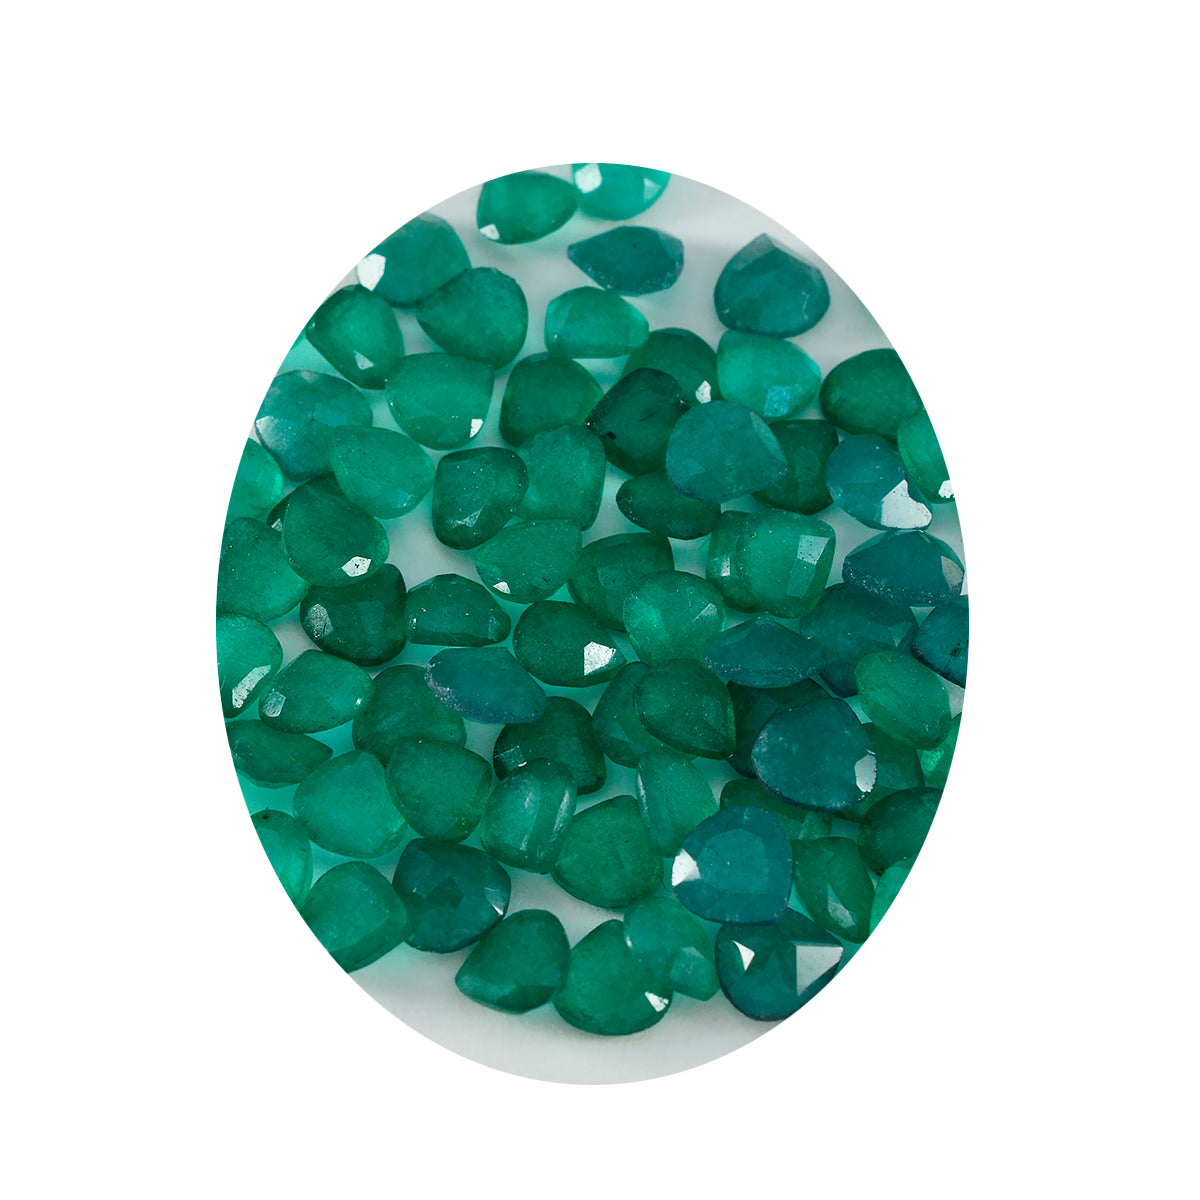 Riyogems 1 pieza jaspe verde auténtico facetado 7x7mm forma de corazón Linda gema suelta de calidad